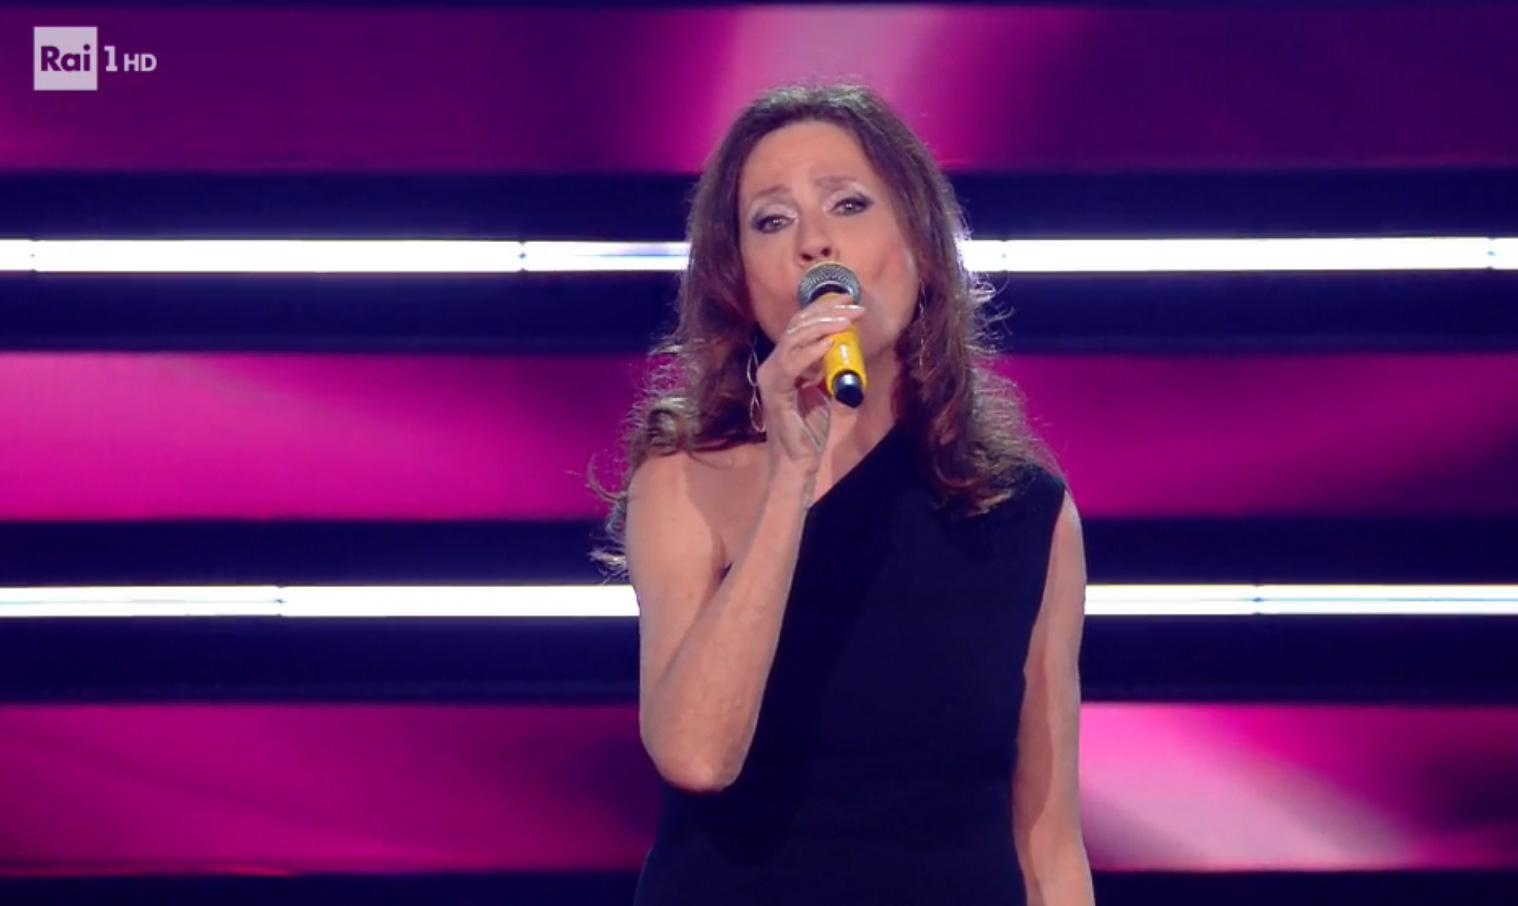 Sanremo 2021 2a serata: Gigliola Cinquetti sul palco dell'Ariston [credit: RaiPlay]